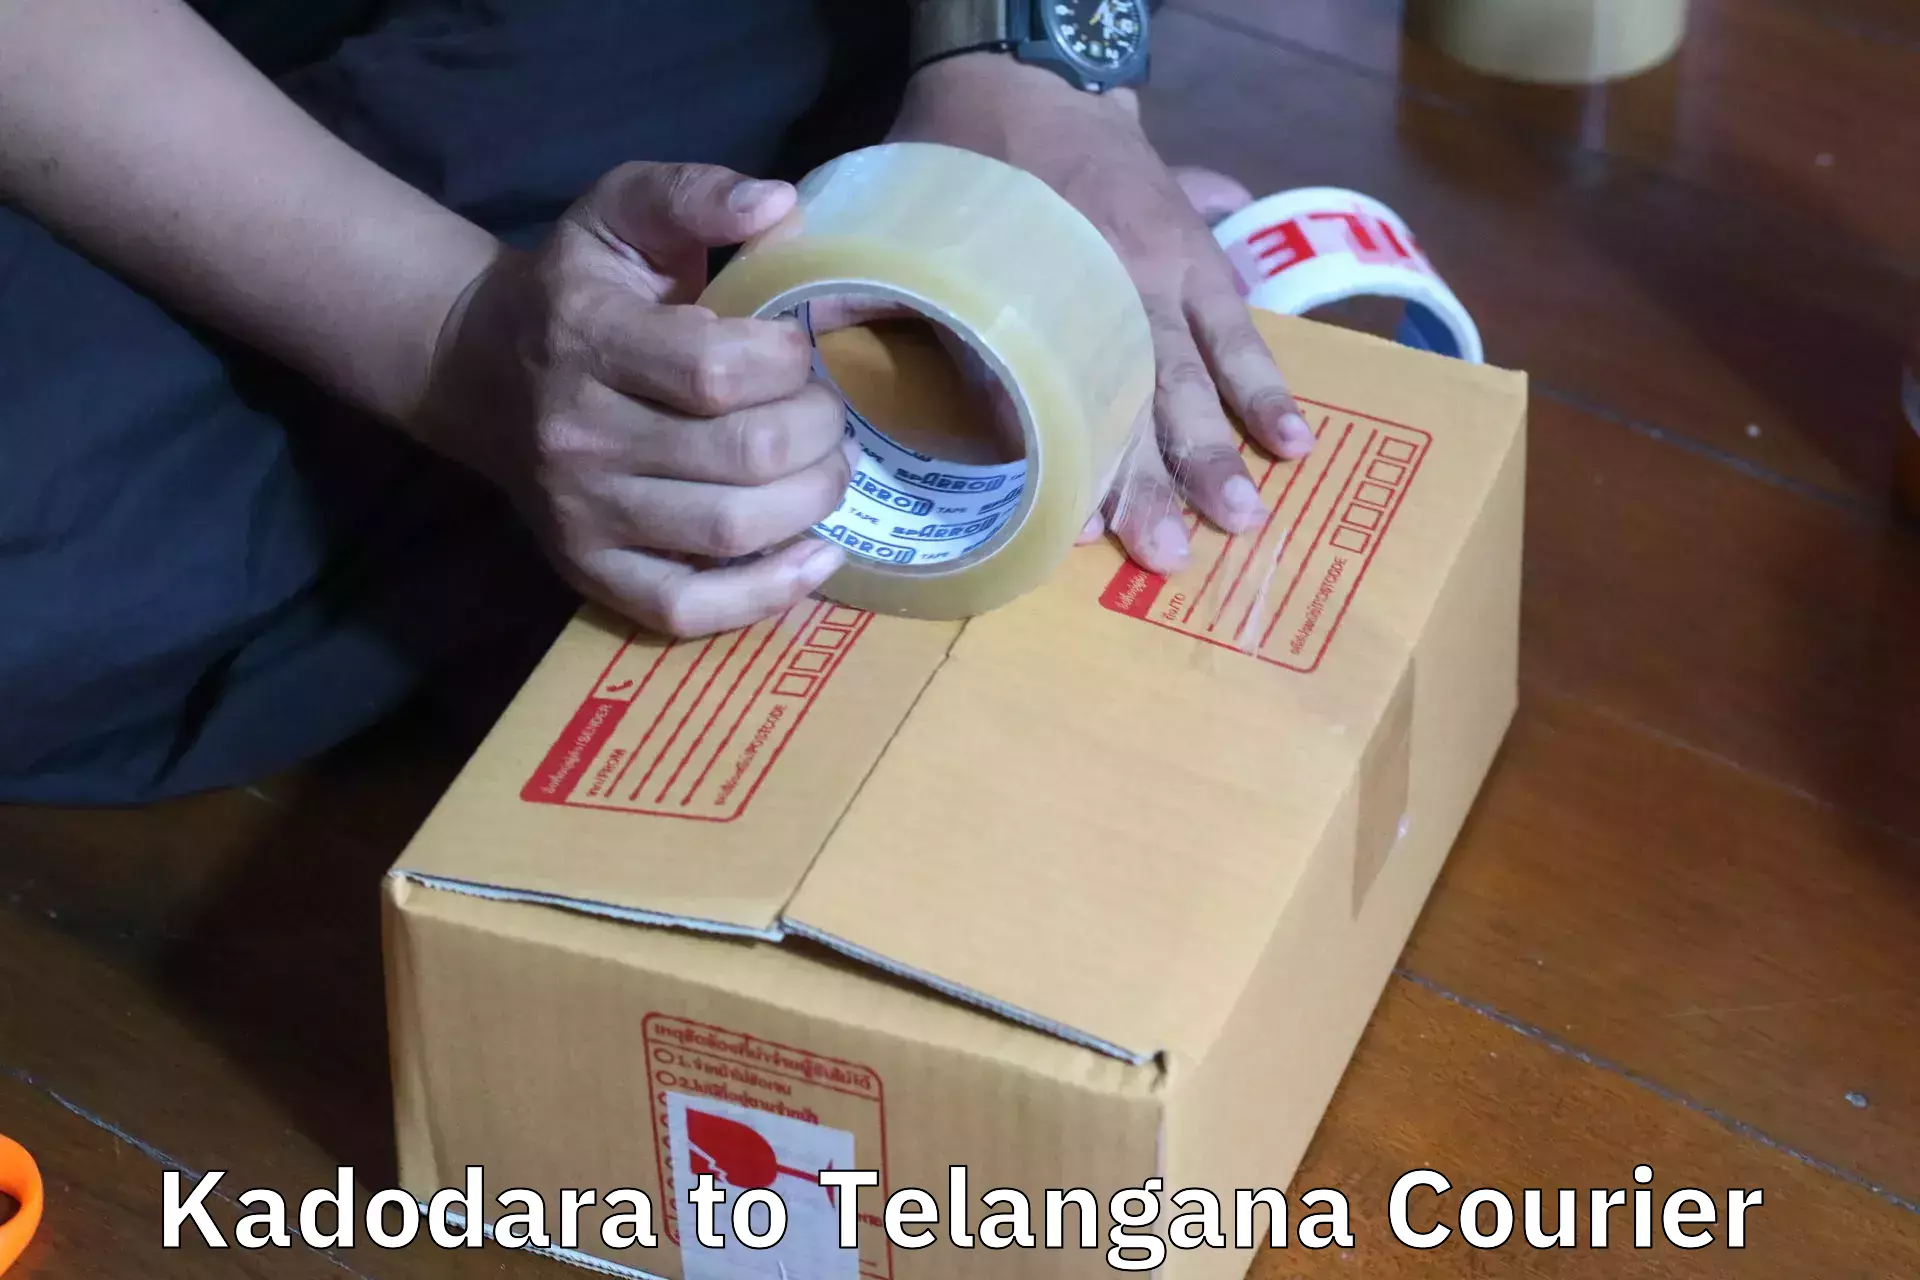 Reliable goods transport Kadodara to Telangana